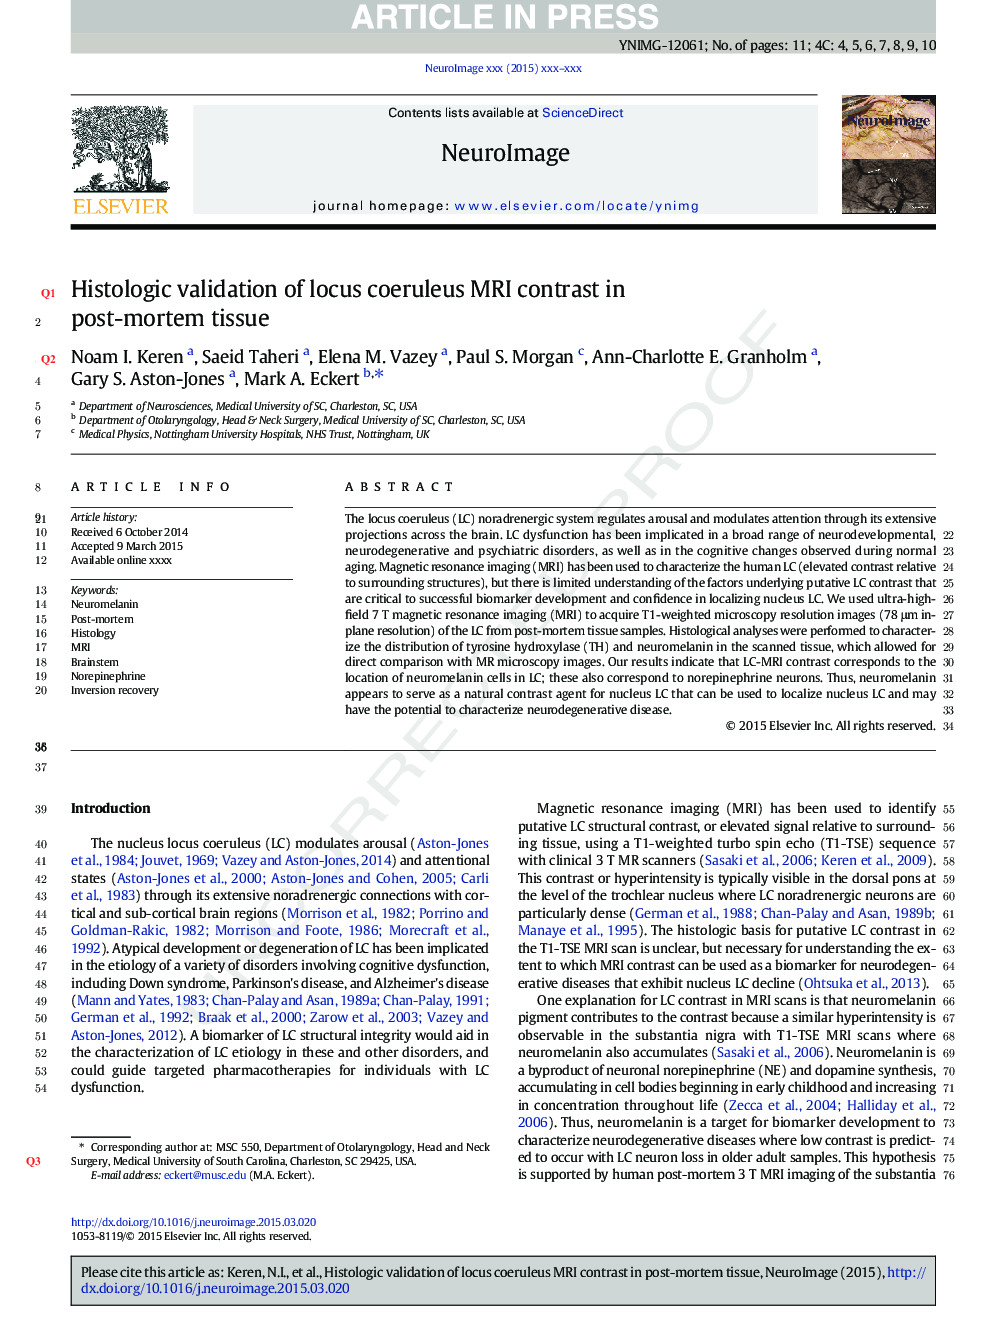 Histologic validation of locus coeruleus MRI contrast in post-mortem tissue